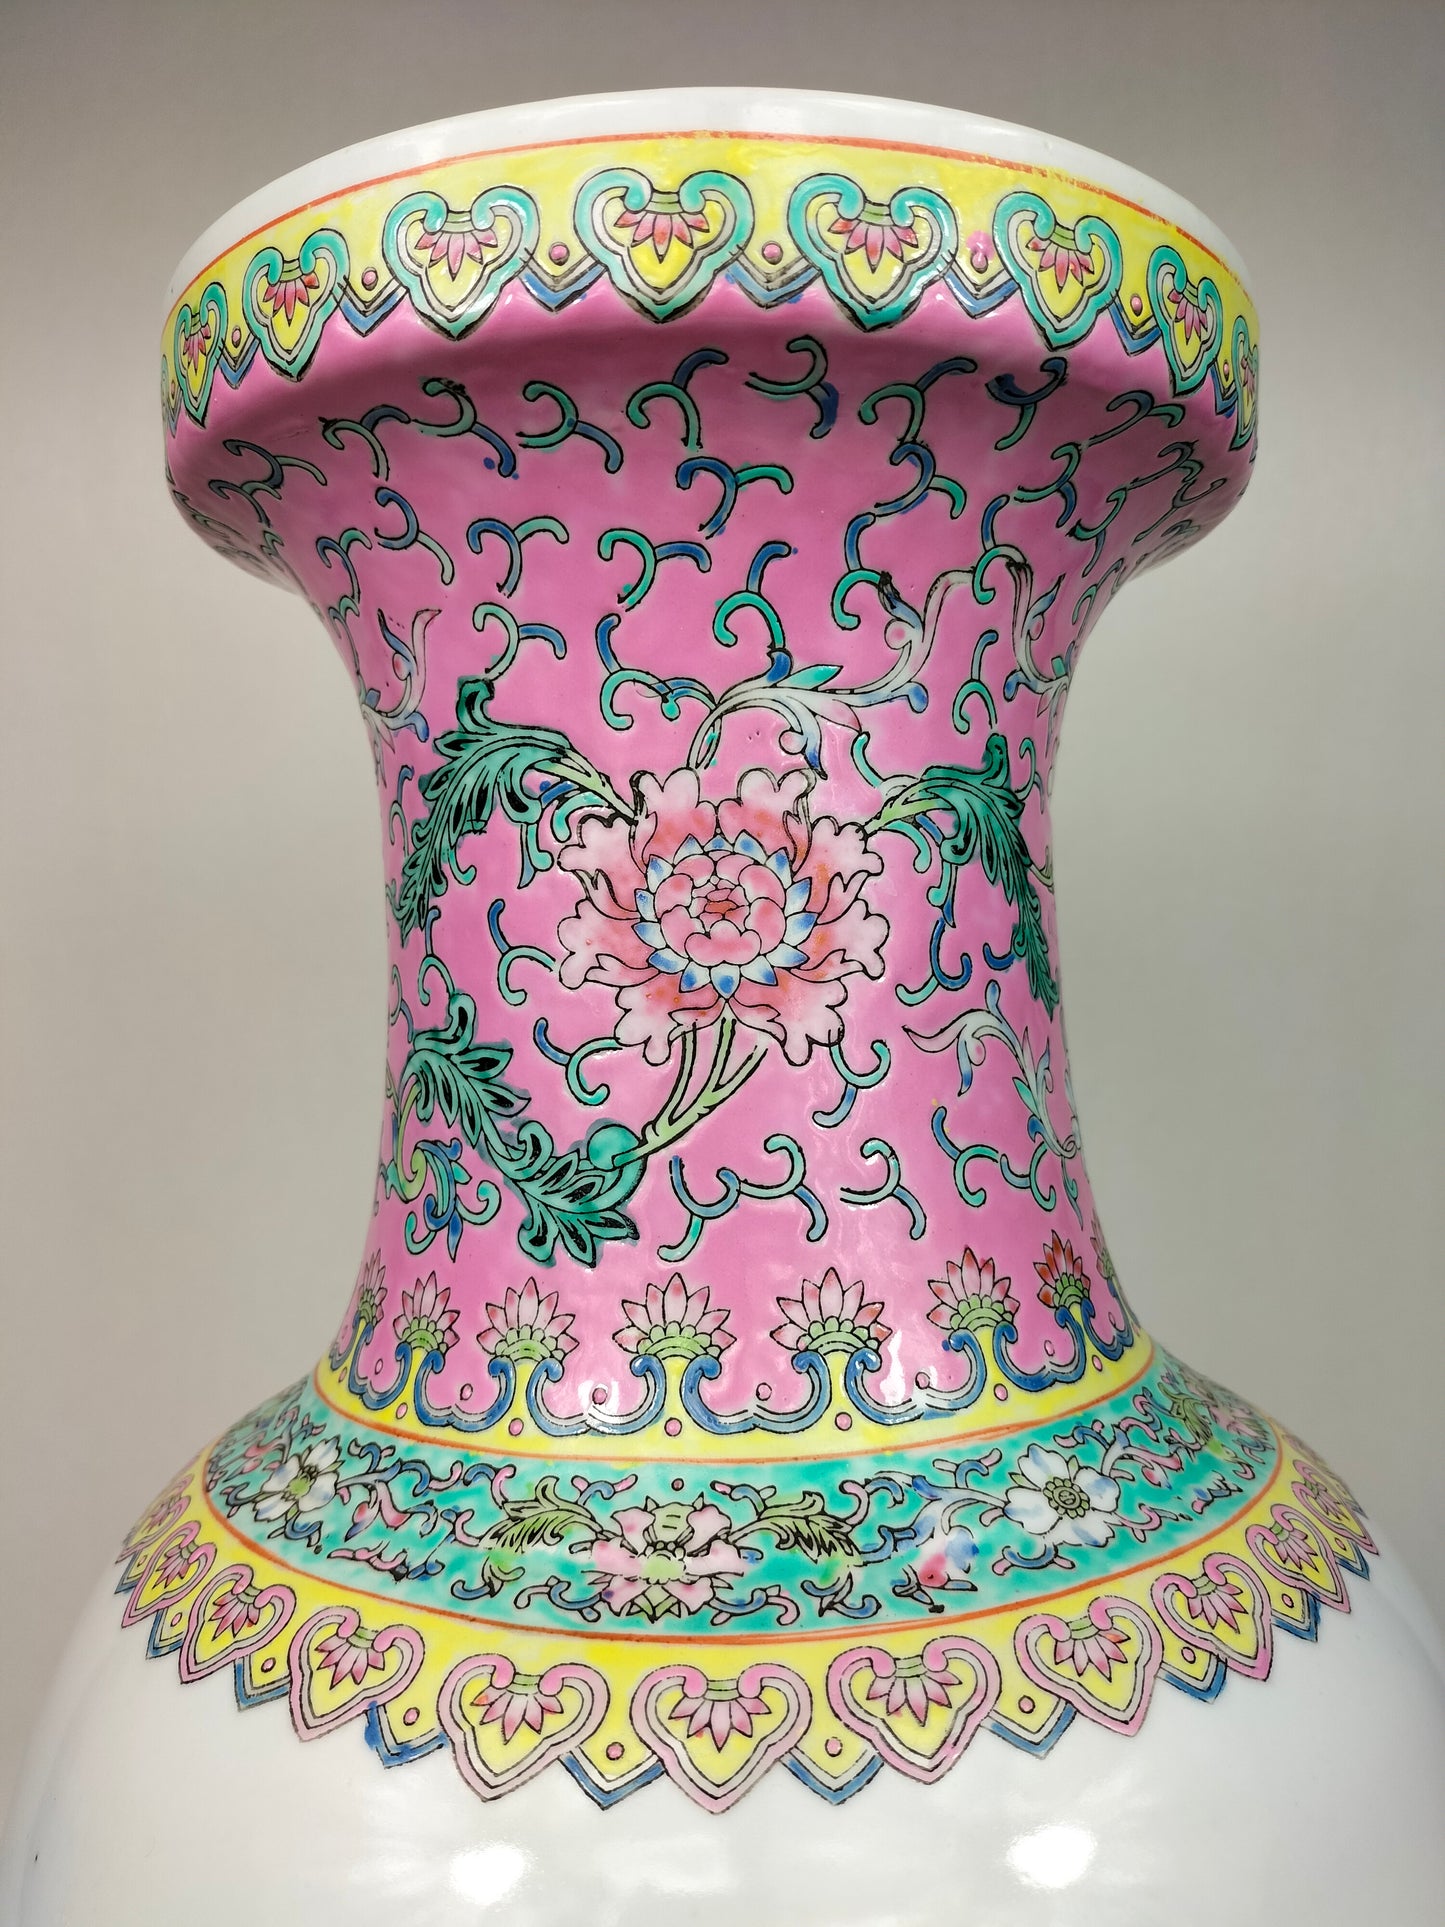 大型中国粉彩花瓶，饰有 8 个神仙 // 景德镇 - 20 世纪